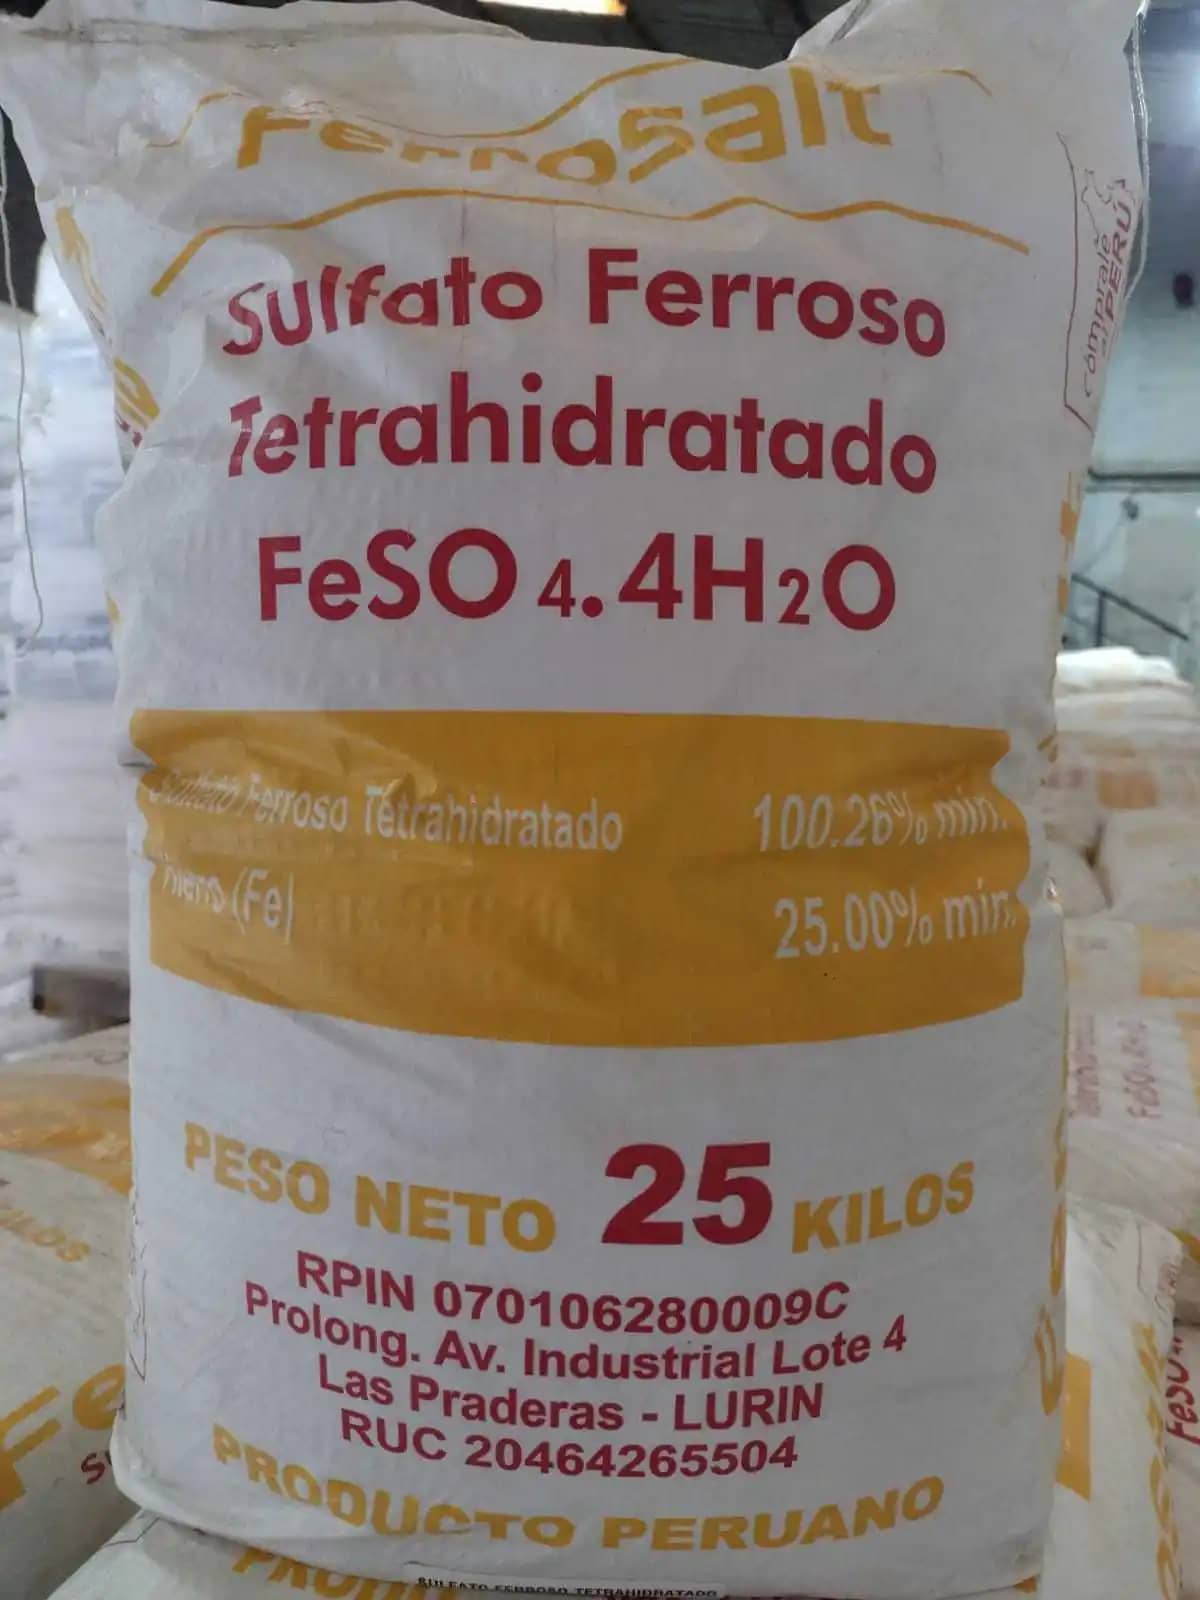 SULFATO FERROSO HEPTAHIDRATADO - Ferrosalt S.A